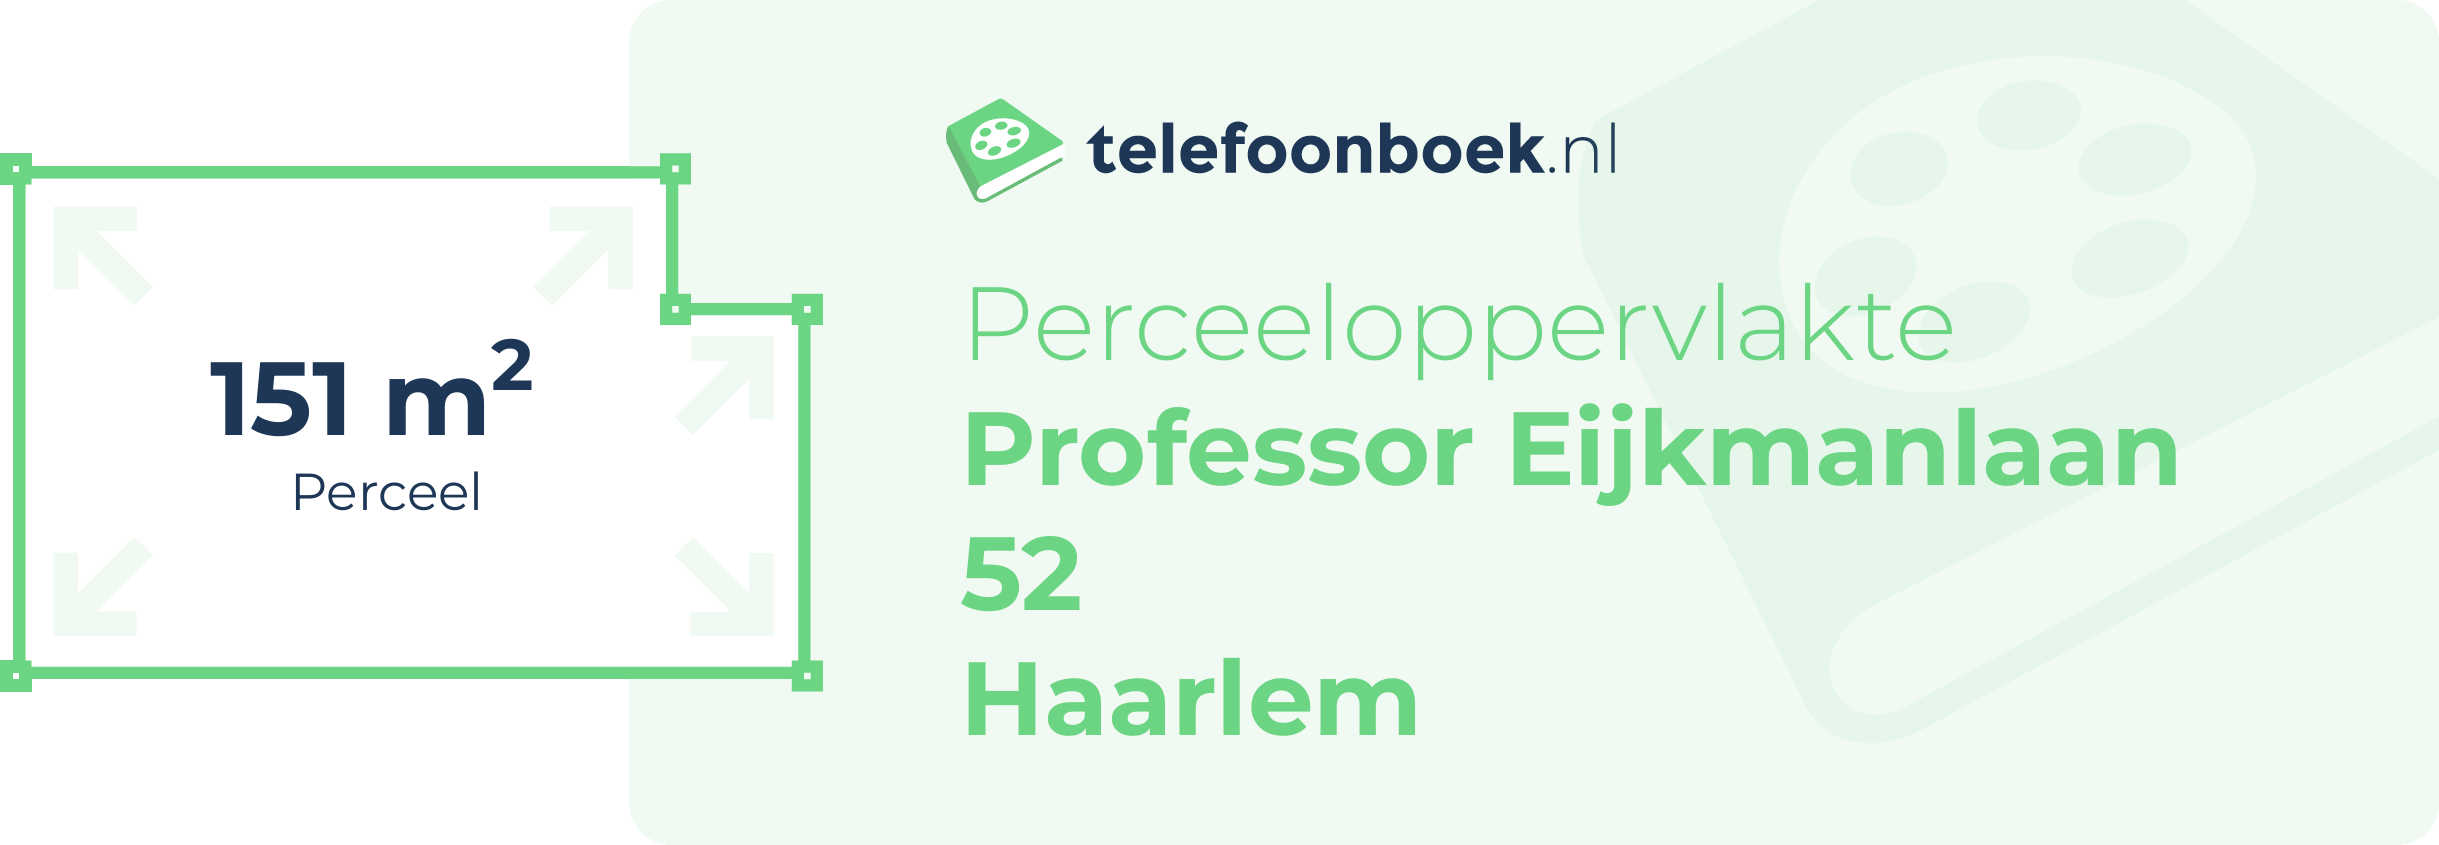 Perceeloppervlakte Professor Eijkmanlaan 52 Haarlem